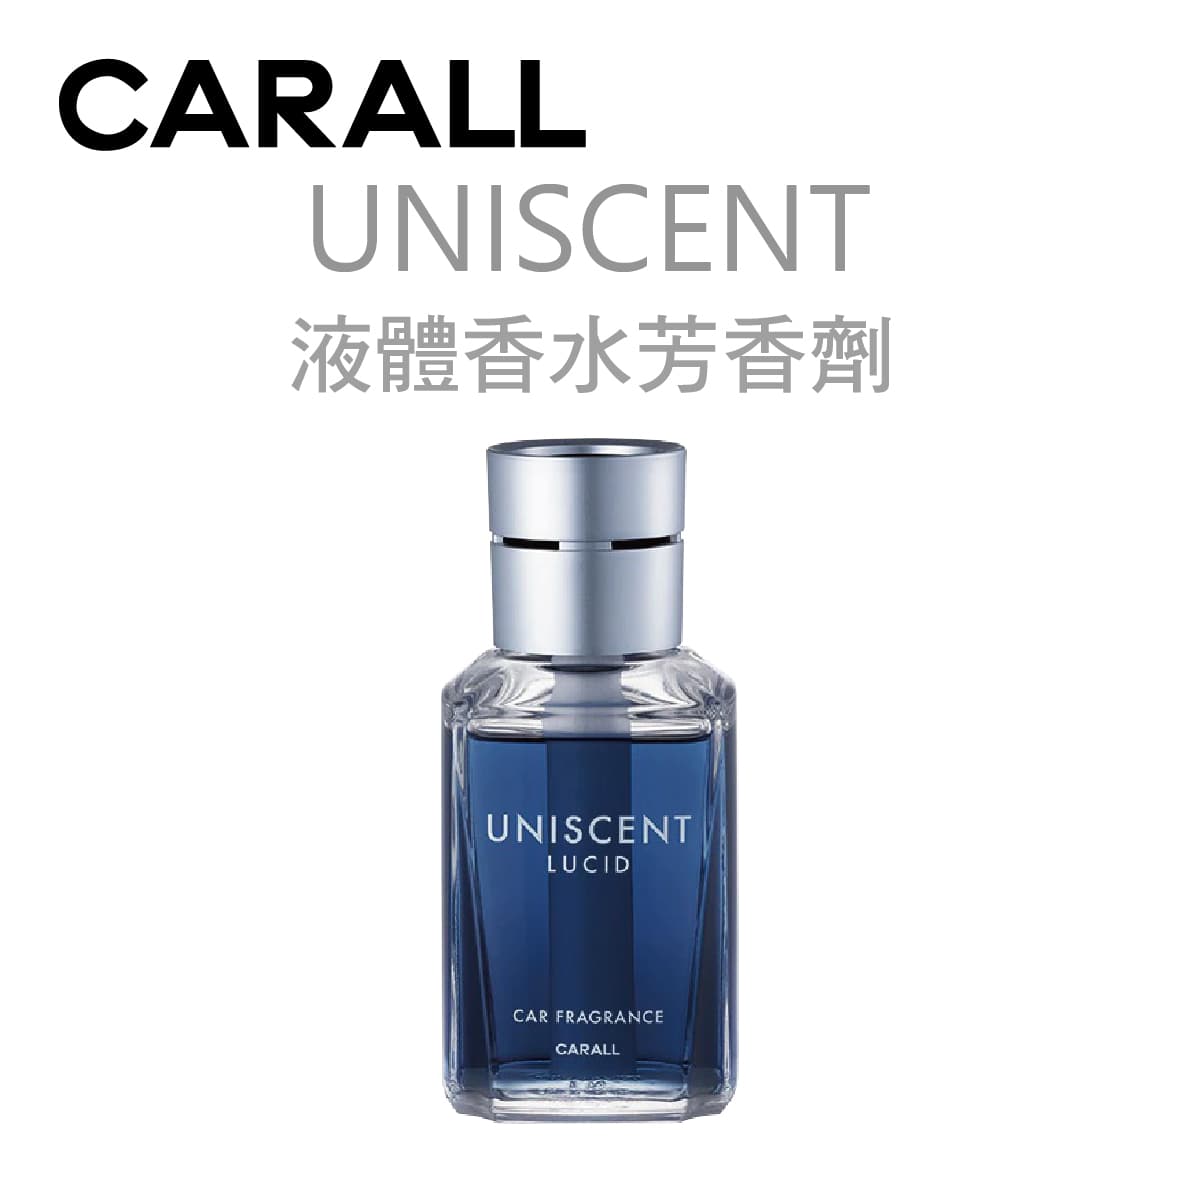 真便宜 CARALL UNISCENT 液體香水芳香劑155ml